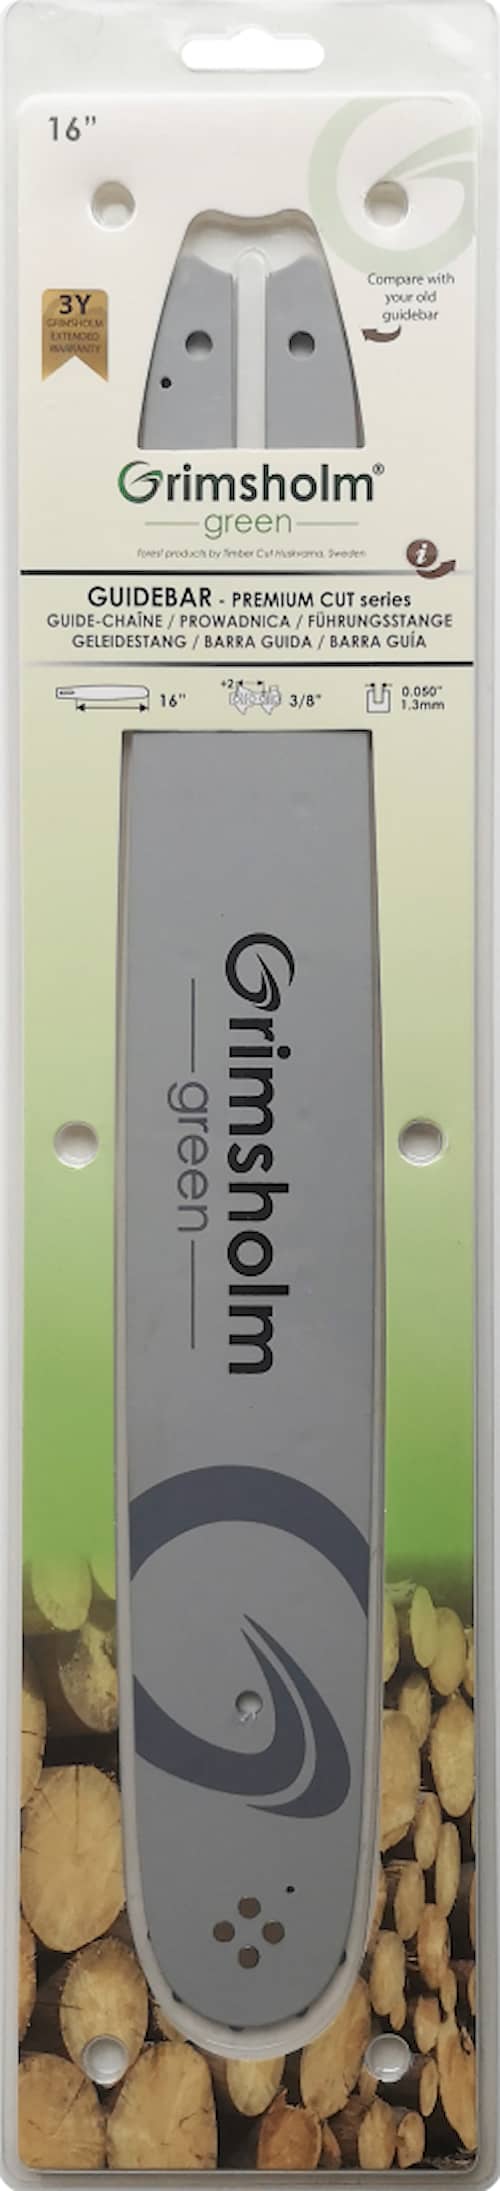 Grimsholm 16 "3/8" 1,3 mm Premium Cut Mersås Safe